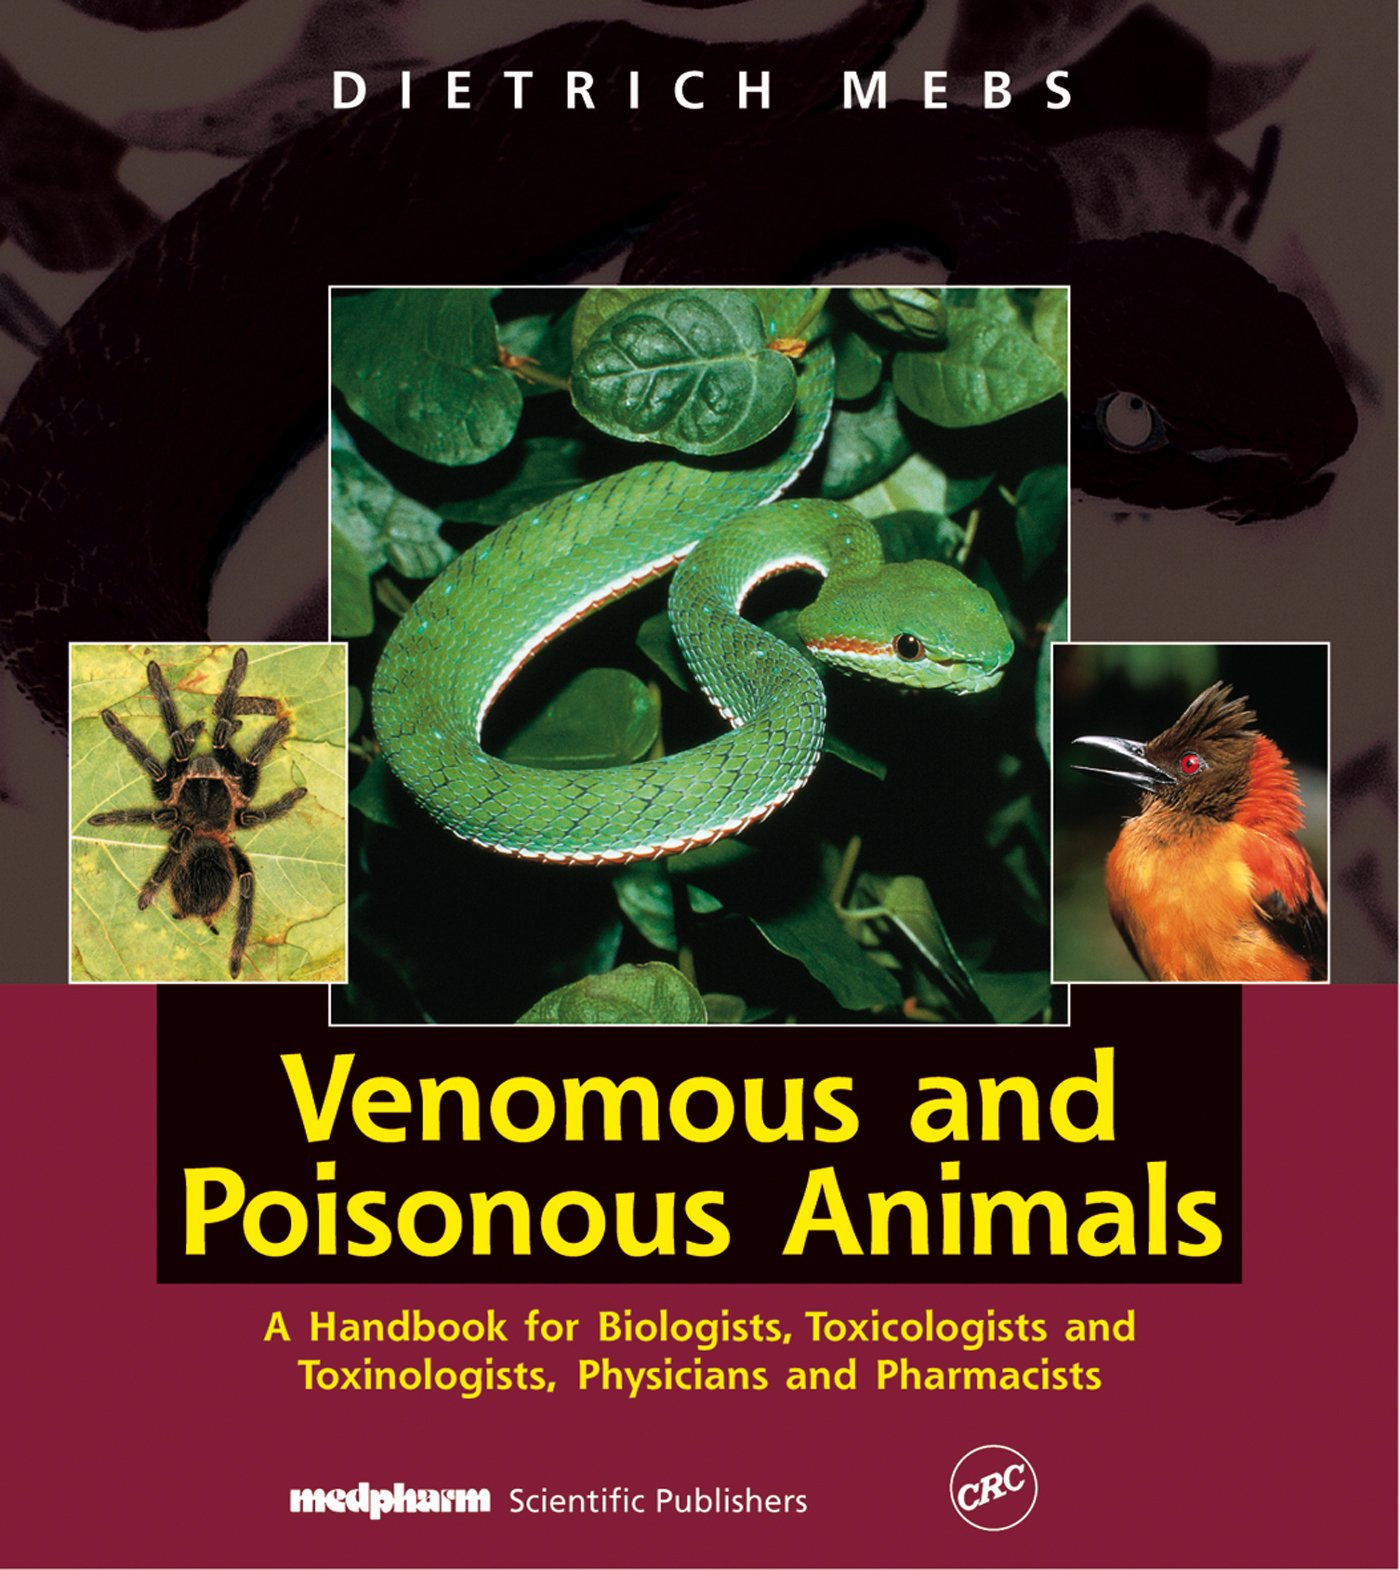 Venomous and Poisonous animals